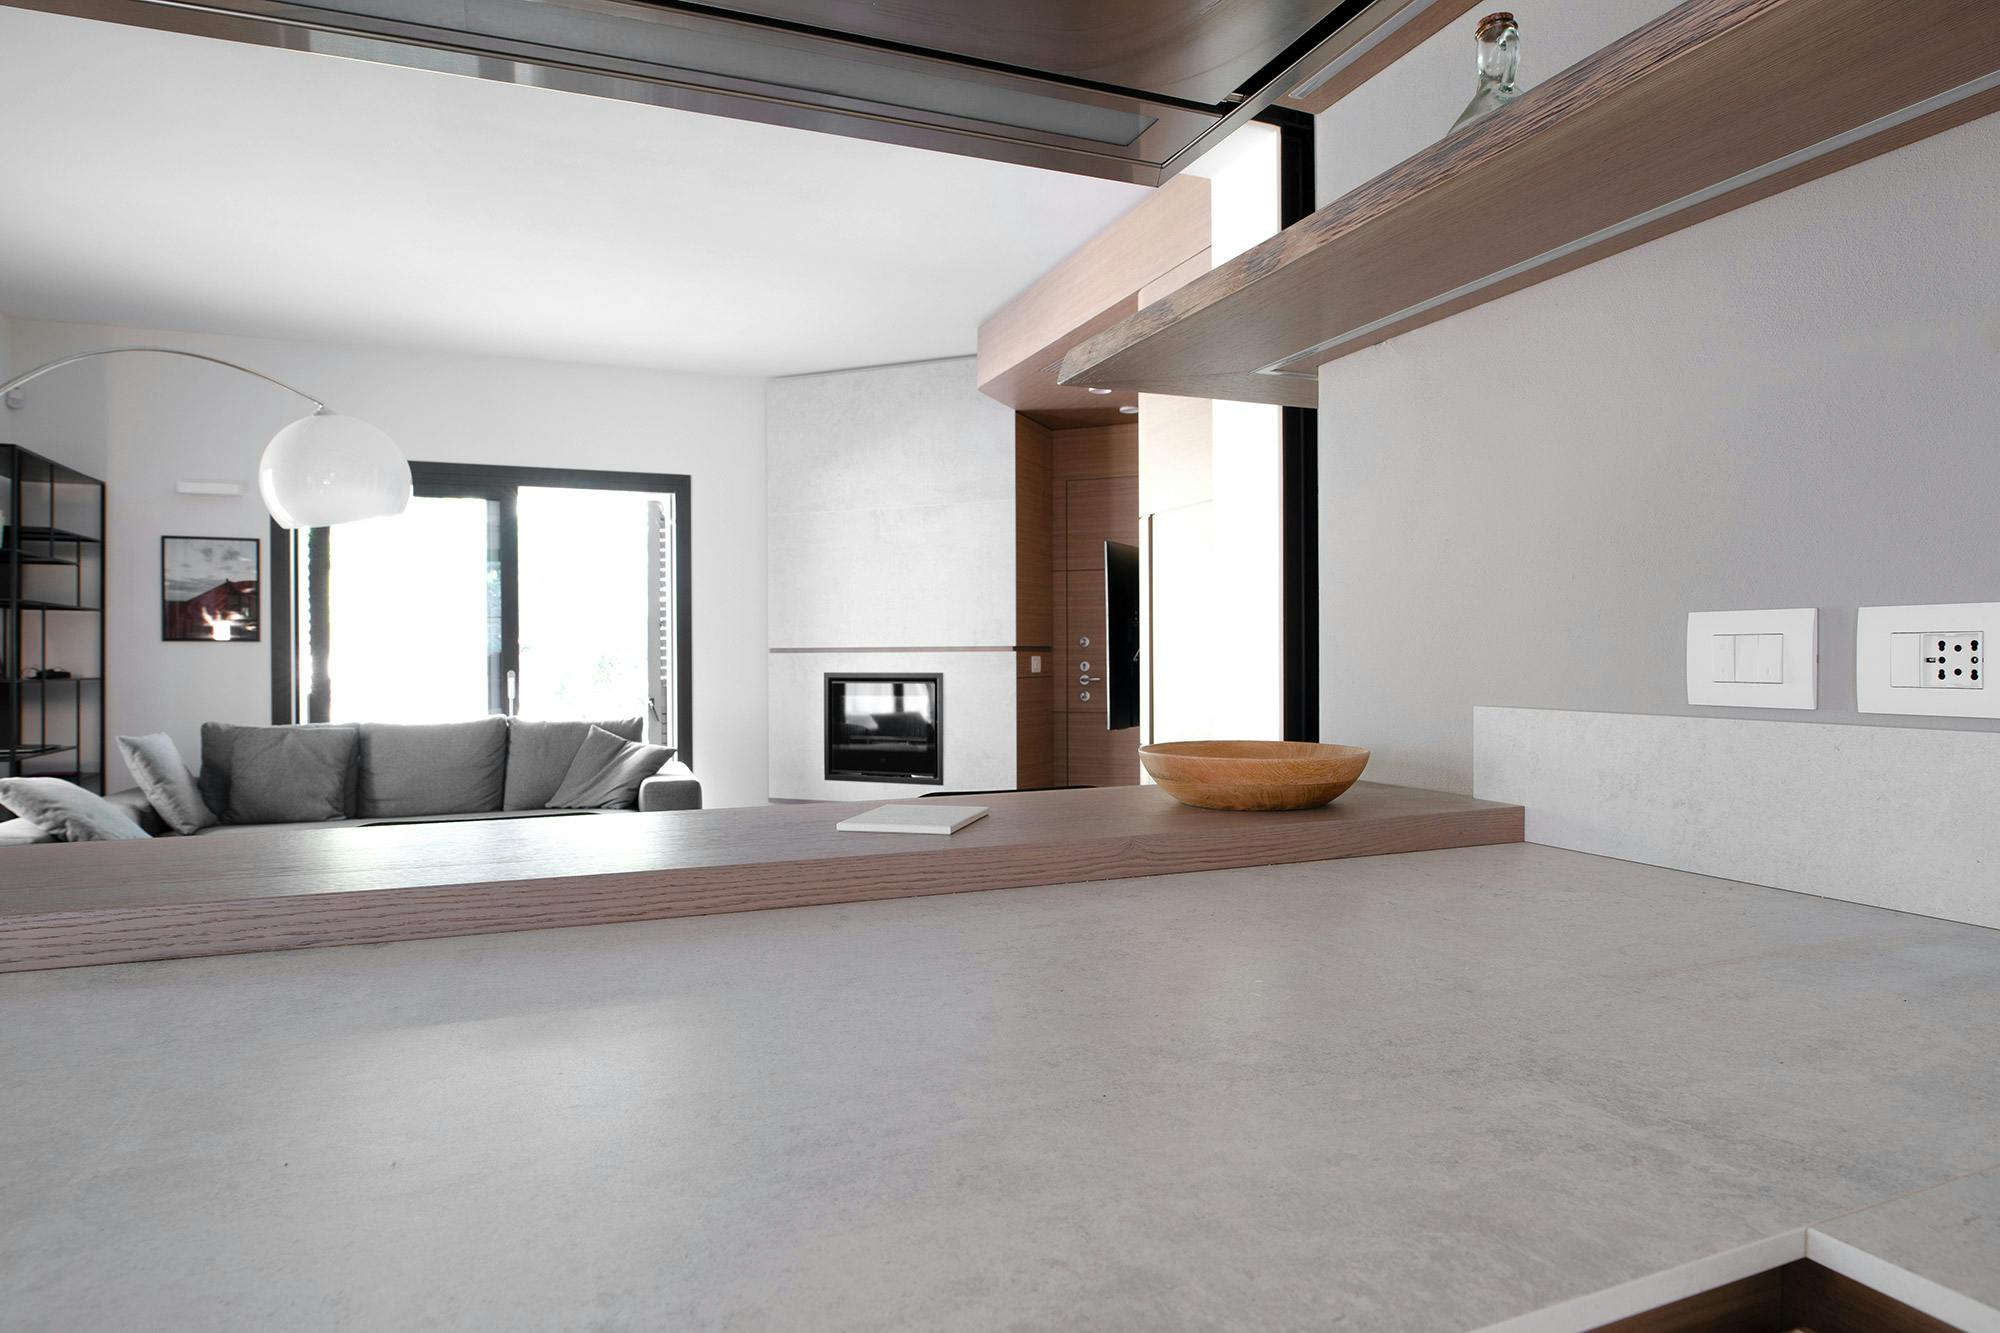 Numero immagine 50 della sezione corrente di One material, a range of uses: this modern house features Dekton Lunar in the fireplace, kitchen and bathroom di Cosentino Italia